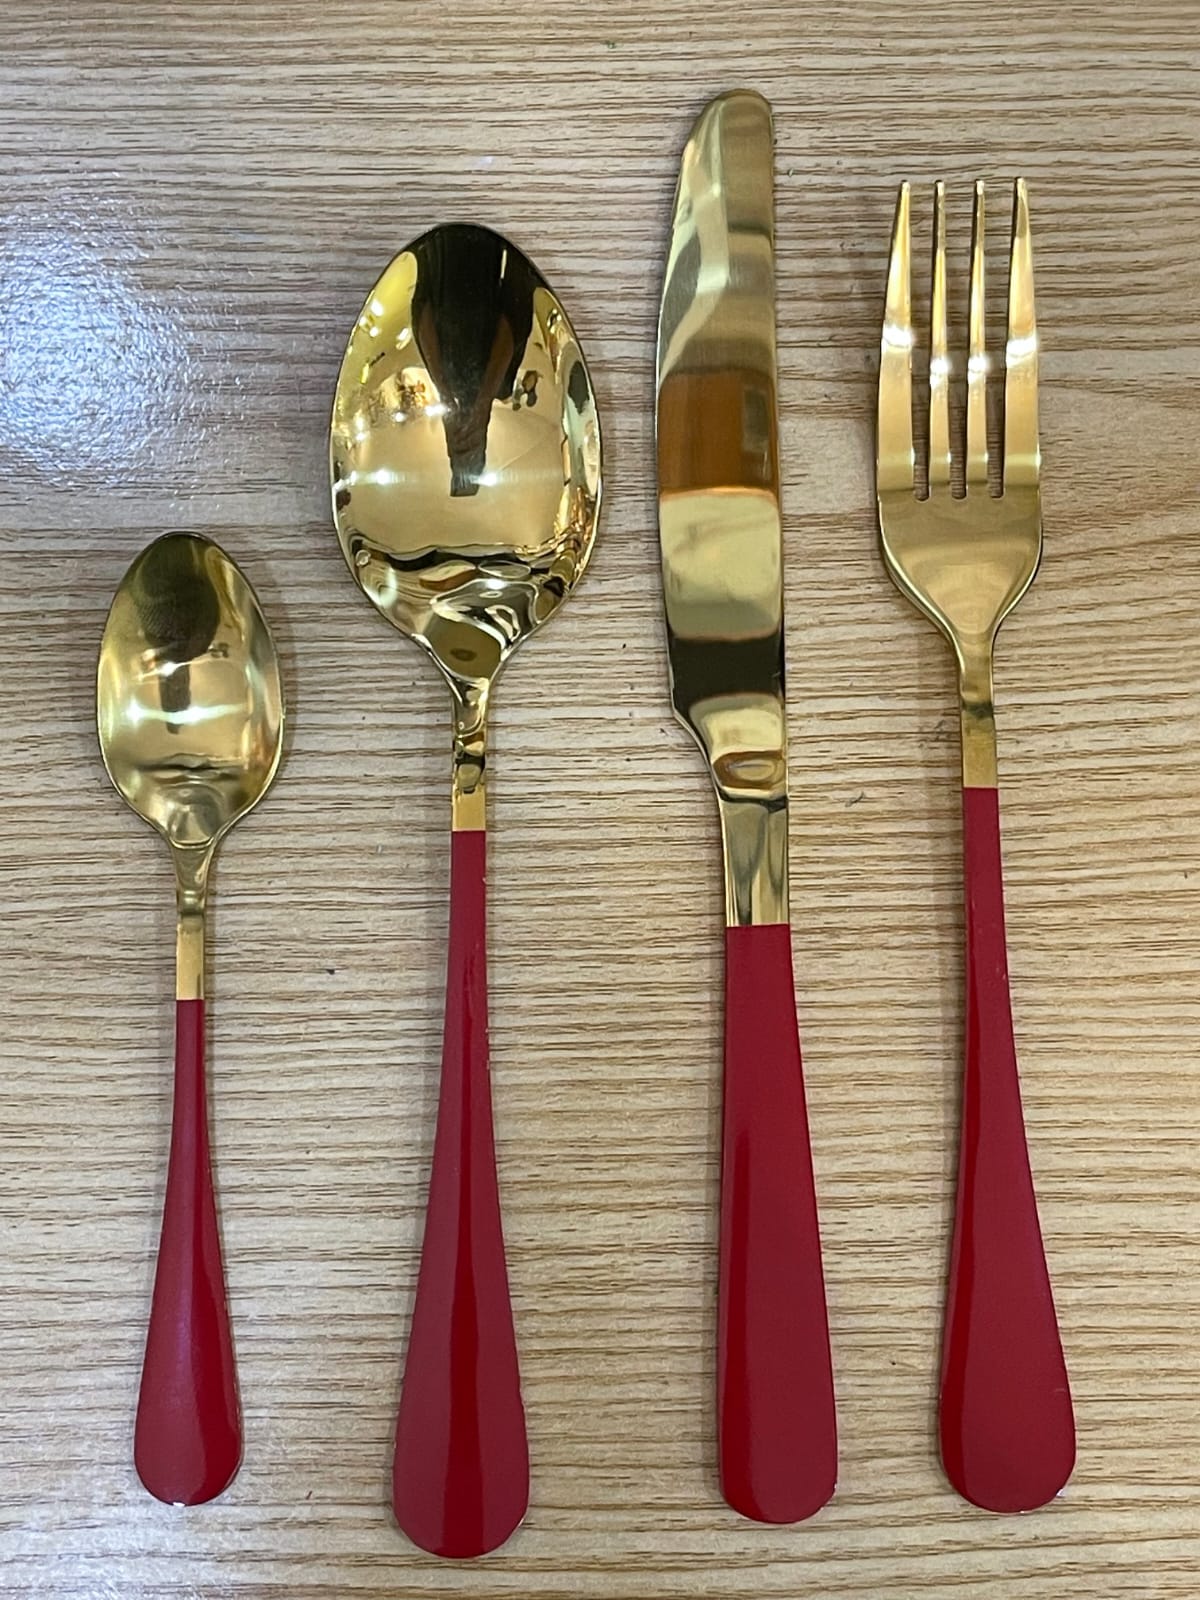 Cutlery Set 24pcs